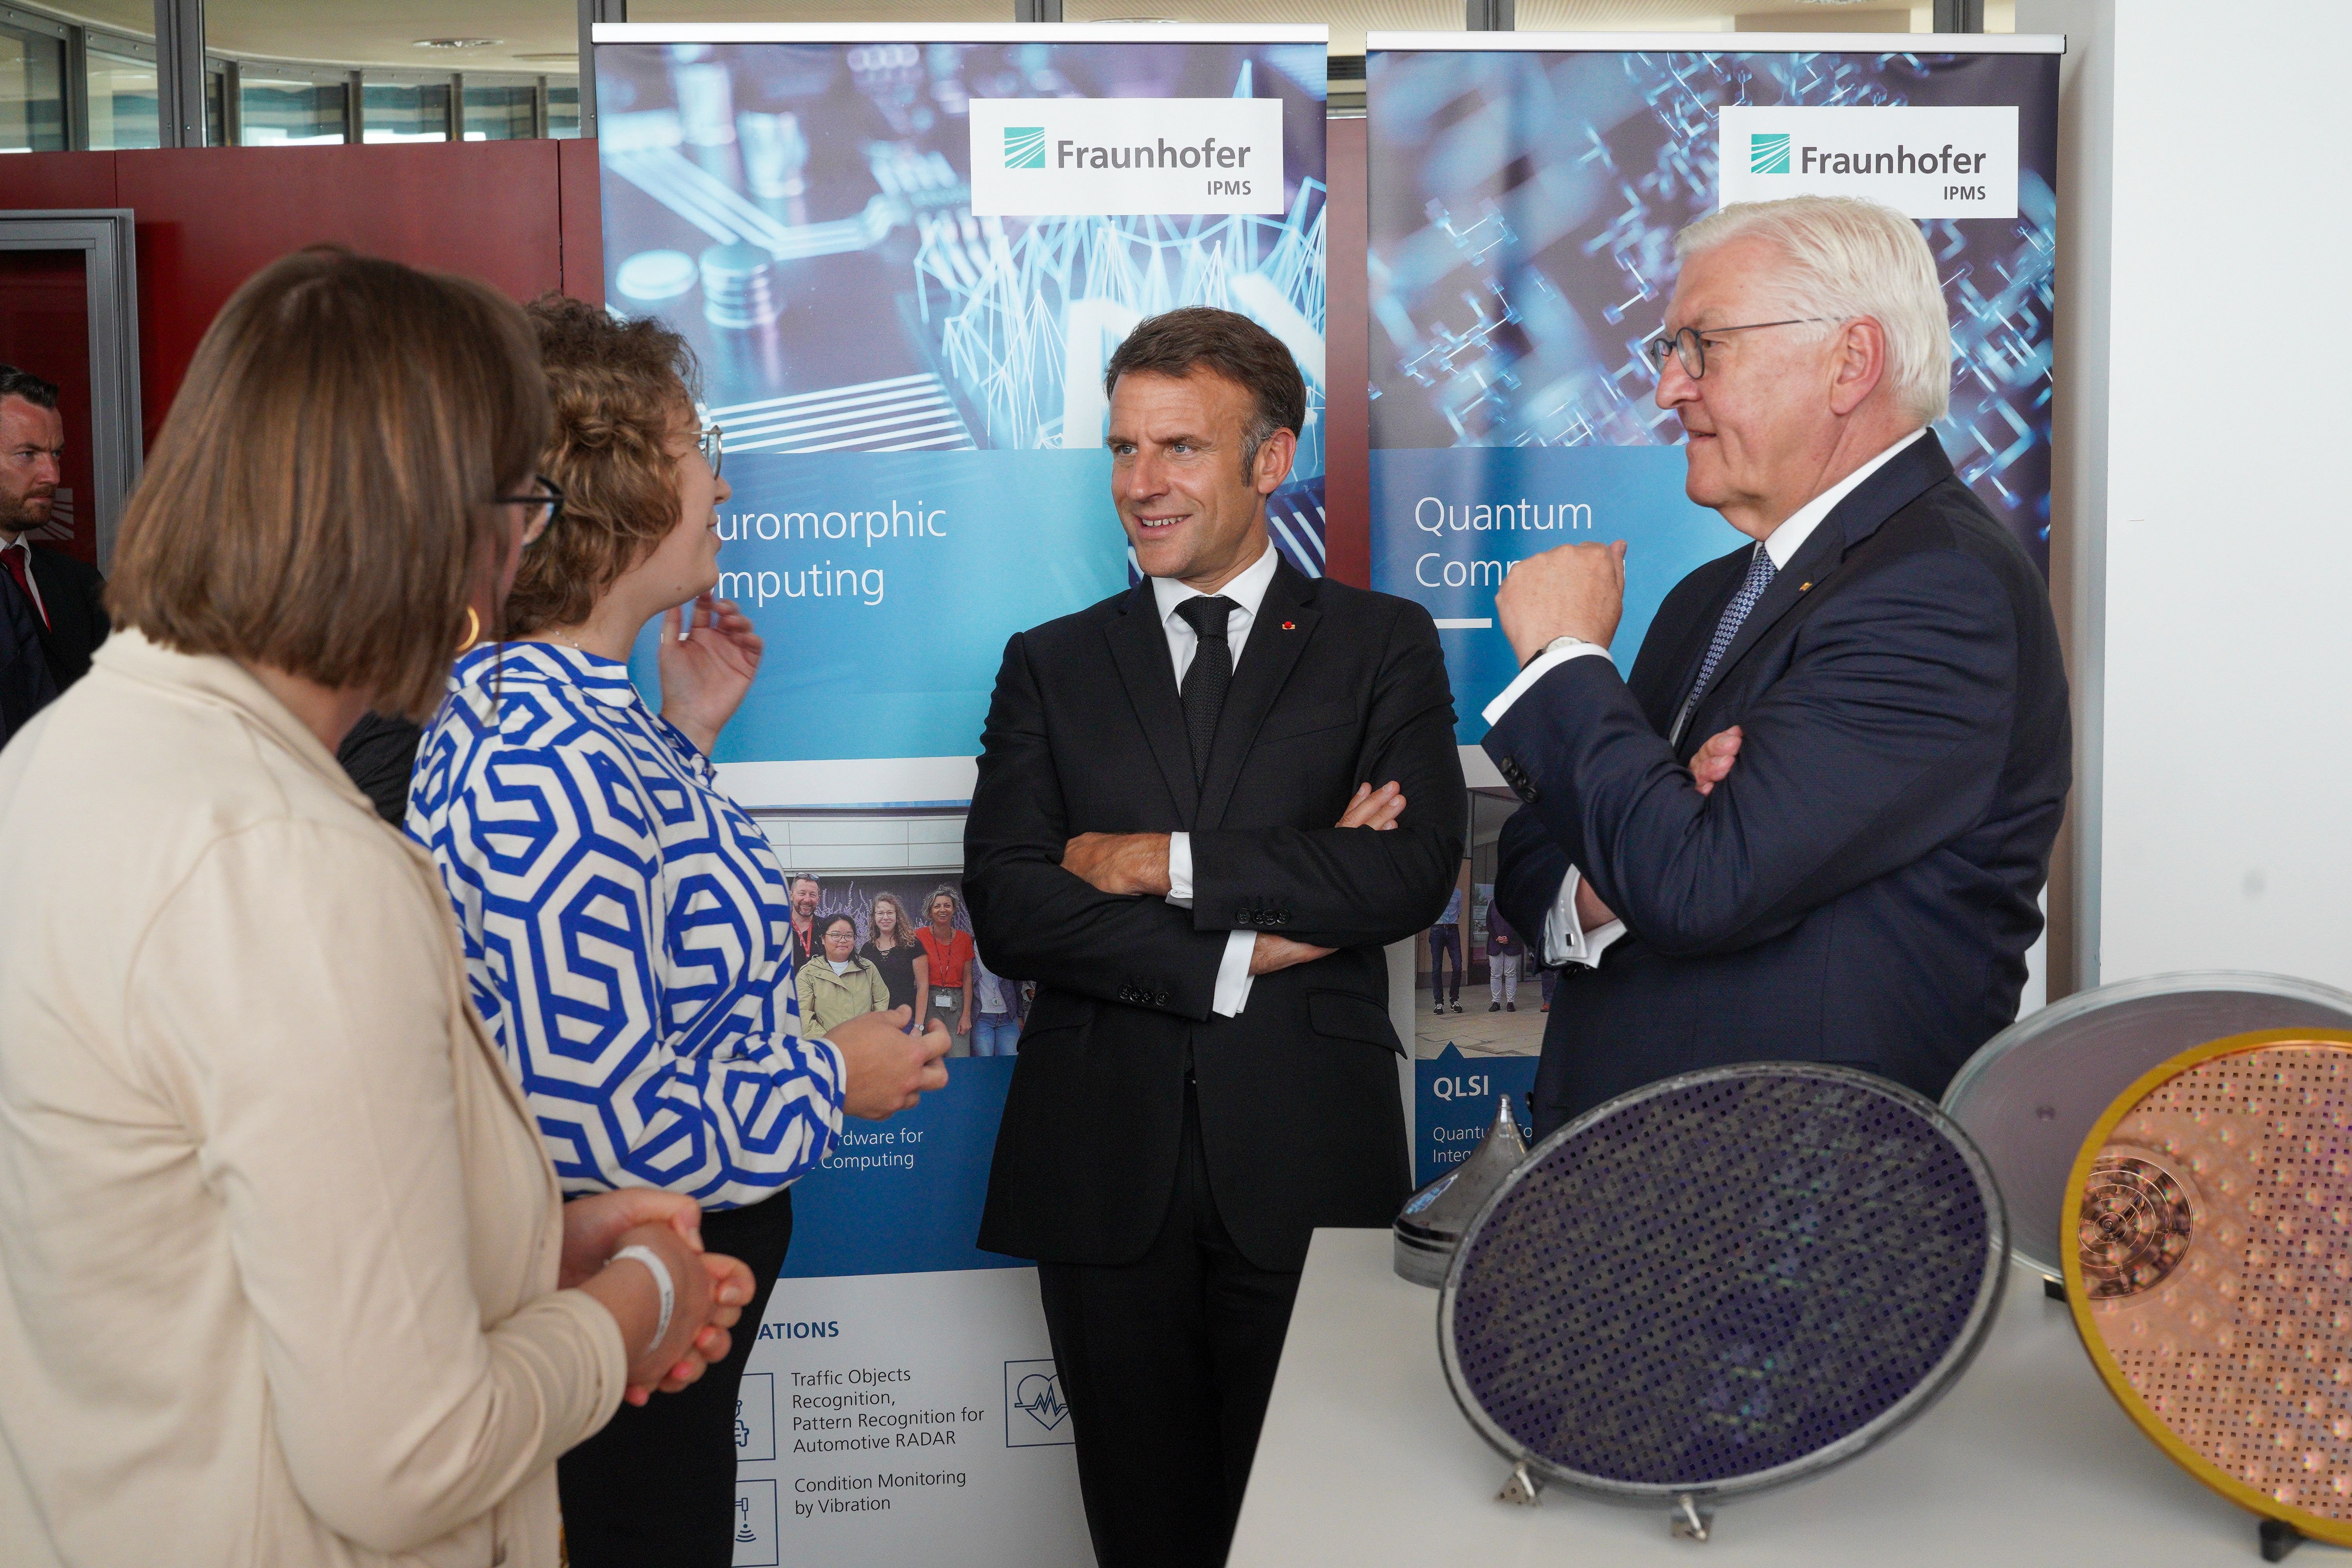 Am Fraunhofer IPMS ließen sich die beiden Präsidenten Hightech-Forschung aus den Bereichen Mikroelektronik, Medizintechnik und Quantentechnologien demonstrieren.